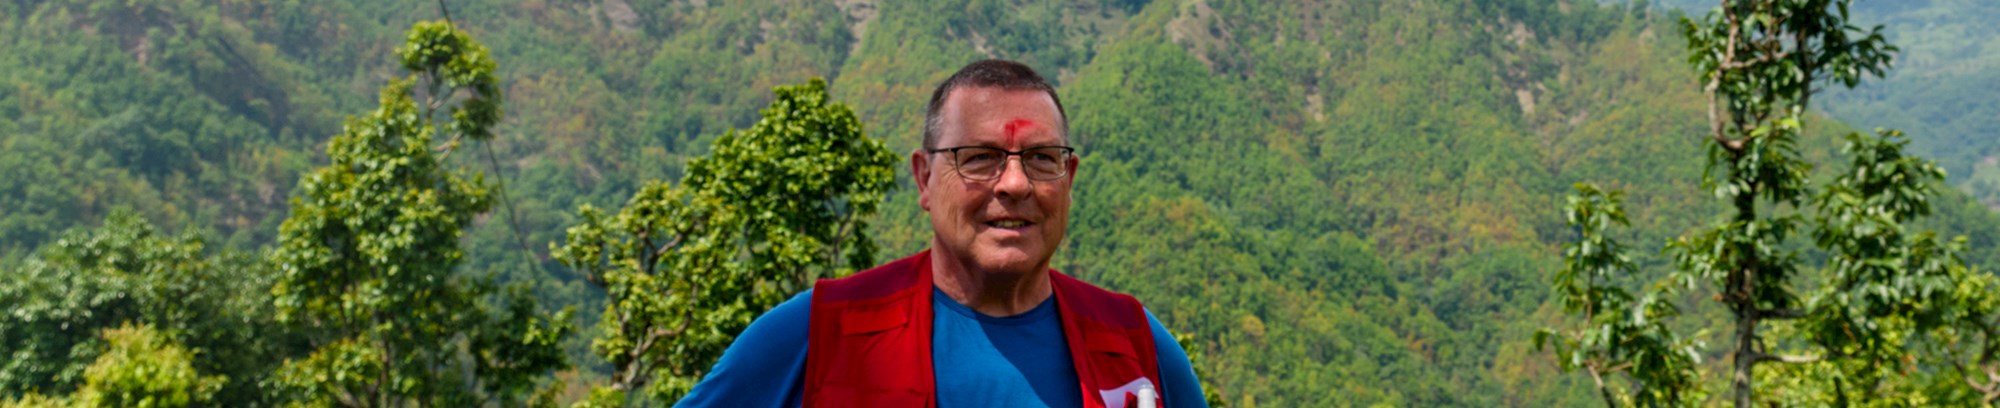 Hør mere om Nepal - landet under verdens tag - fra Erik Demant til dette Kolding Talks arrangement